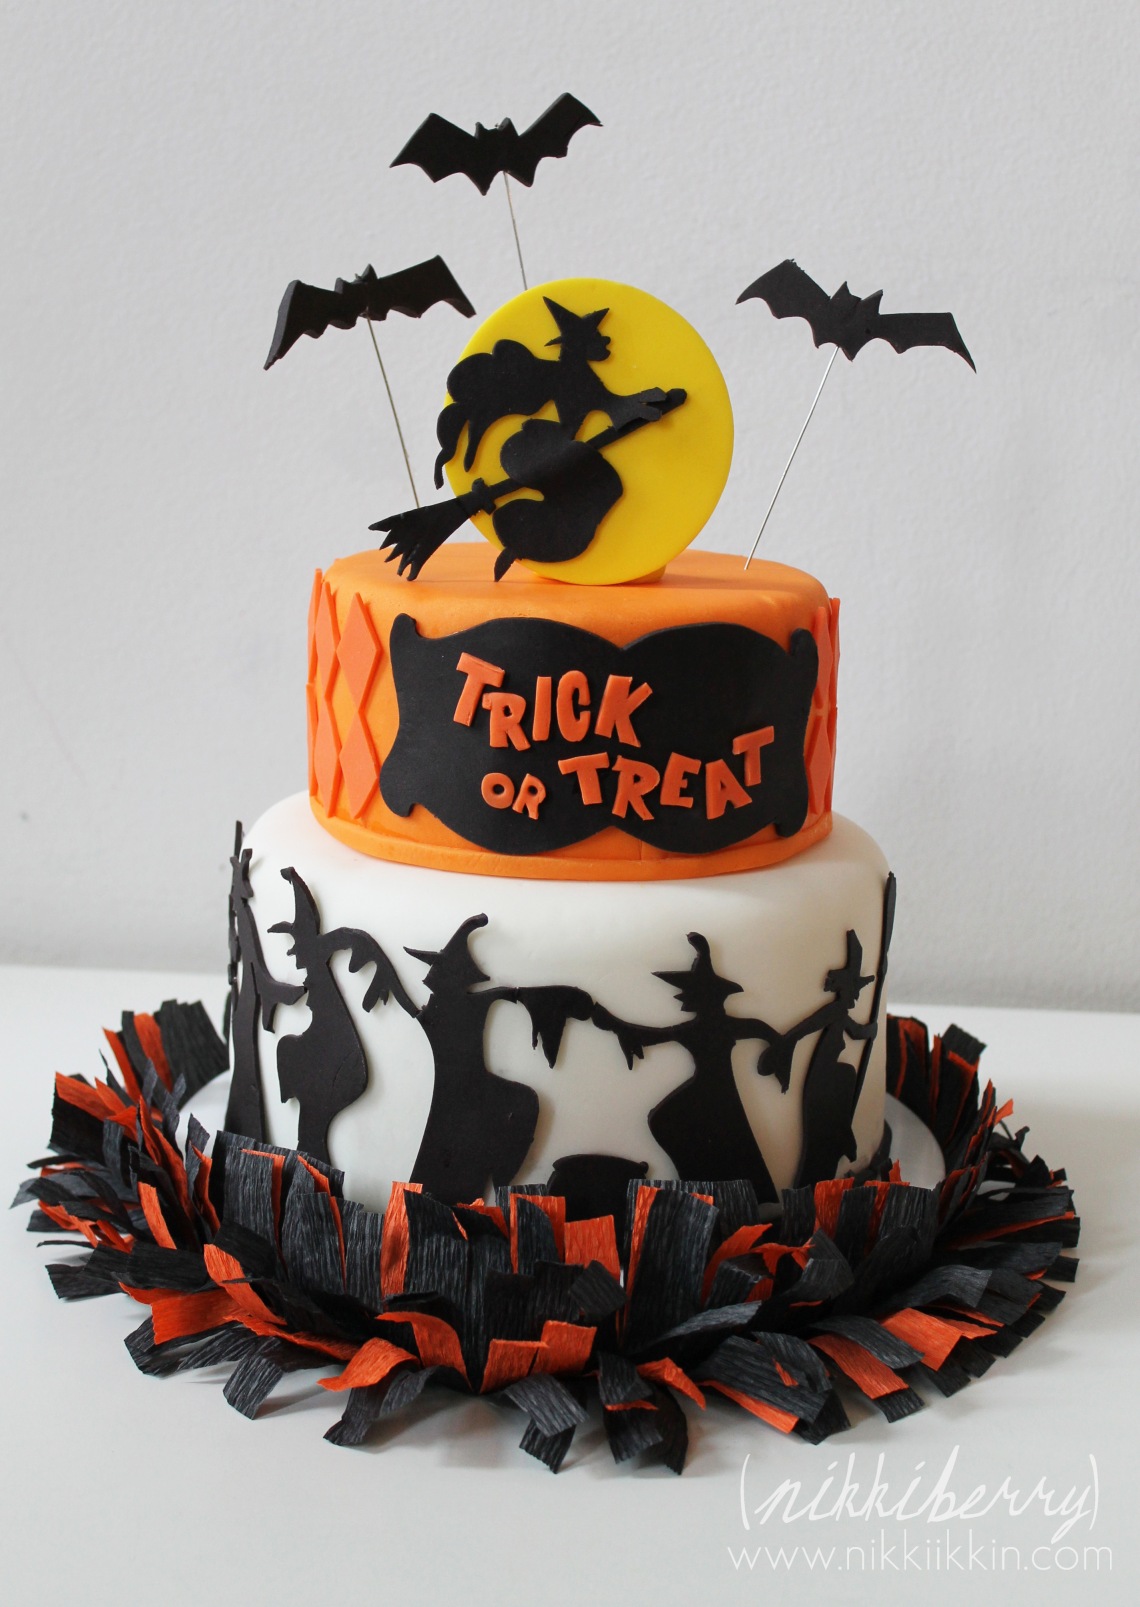 nikkiikkin halloween cake 2012